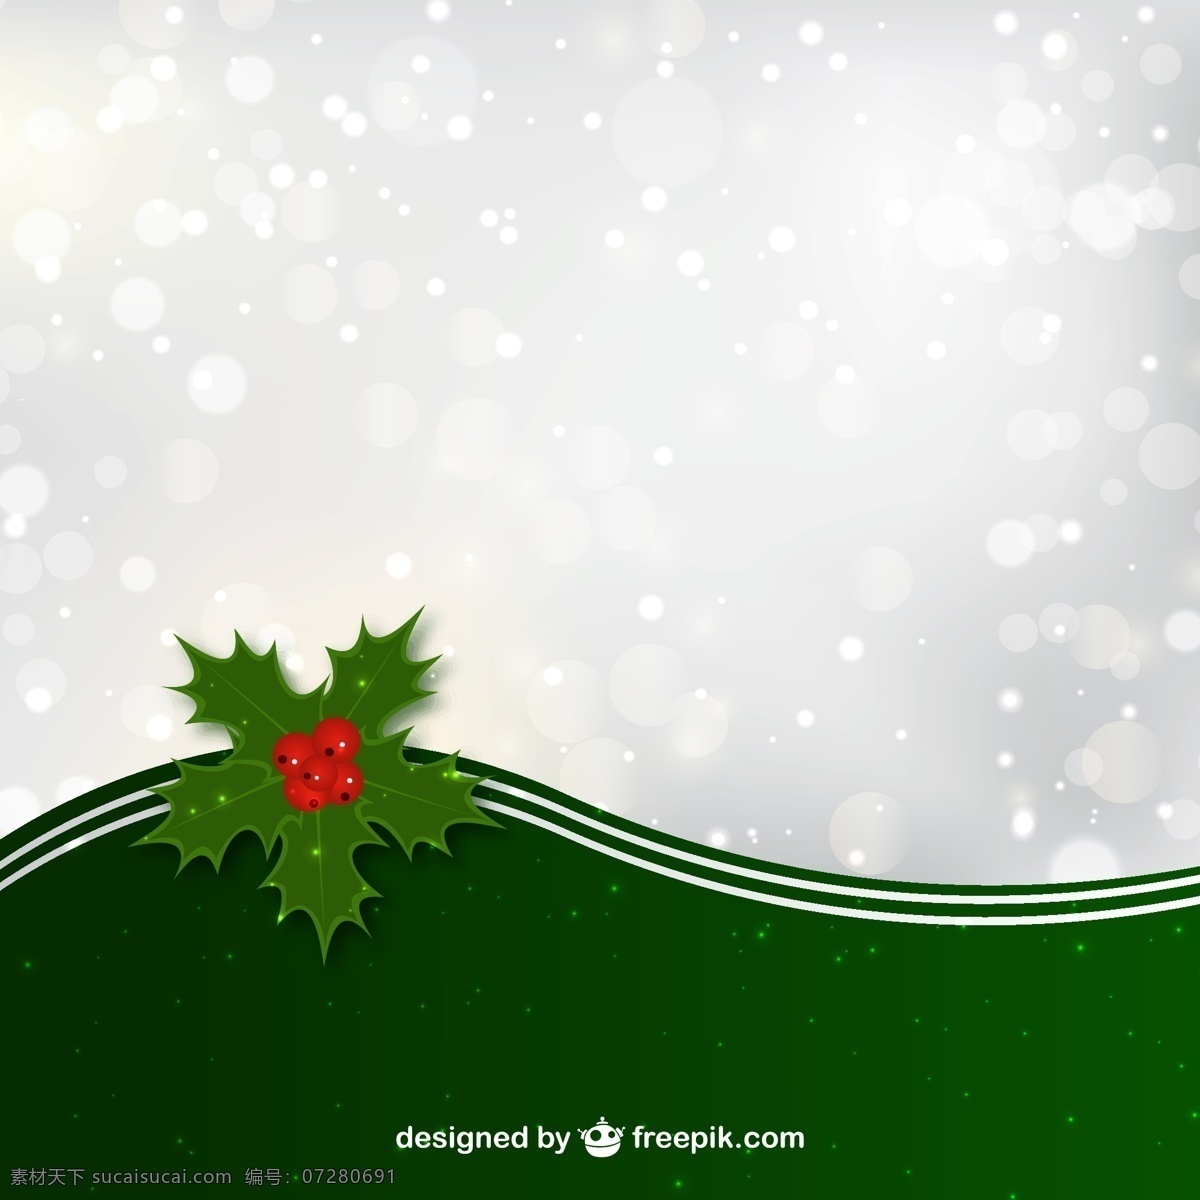 圣诞节 雪花 矢量图 h5 背景 装饰叶子 圣诞狂欢 光晕 h5背景 圣诞节背景 雪花背景